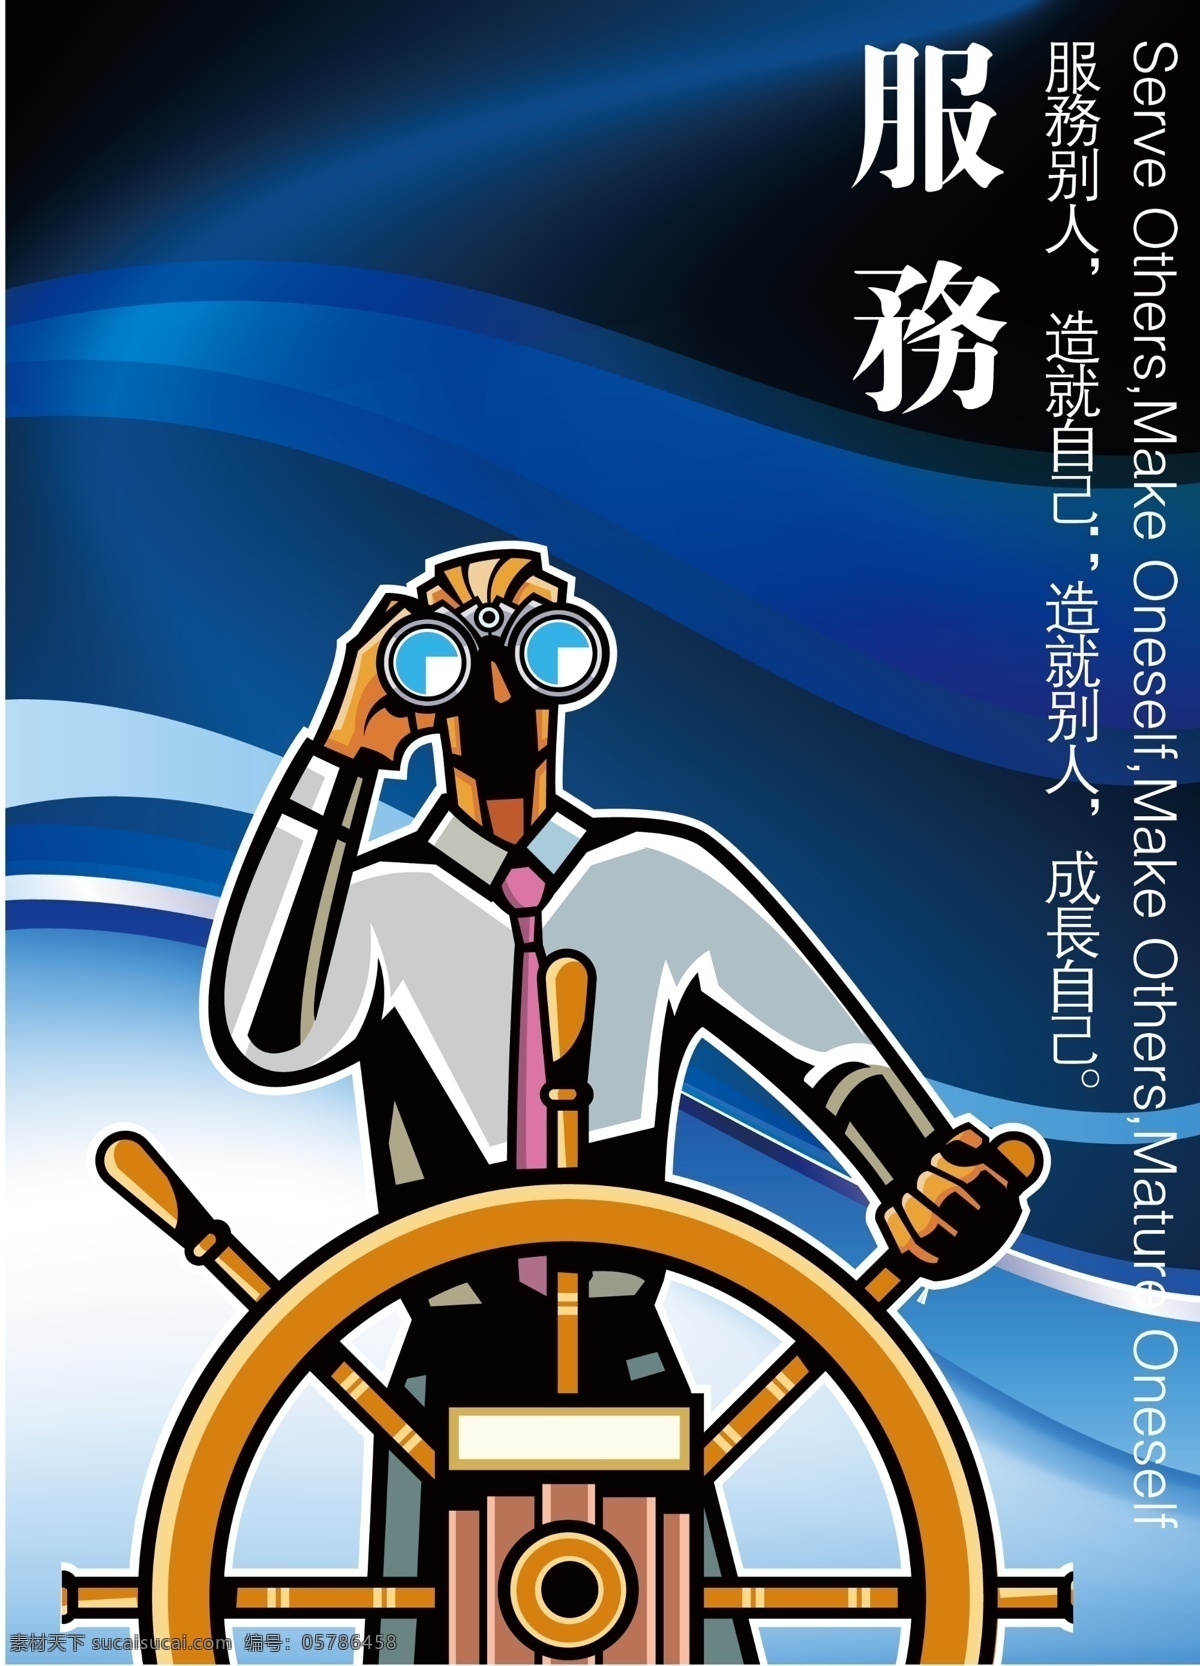 企业 精神 形象 宣传海报 服务 篇 公司 单位 集团 办公 理念 海报 舵手 船舵 望远镜 水手 广告设计模板 源文件